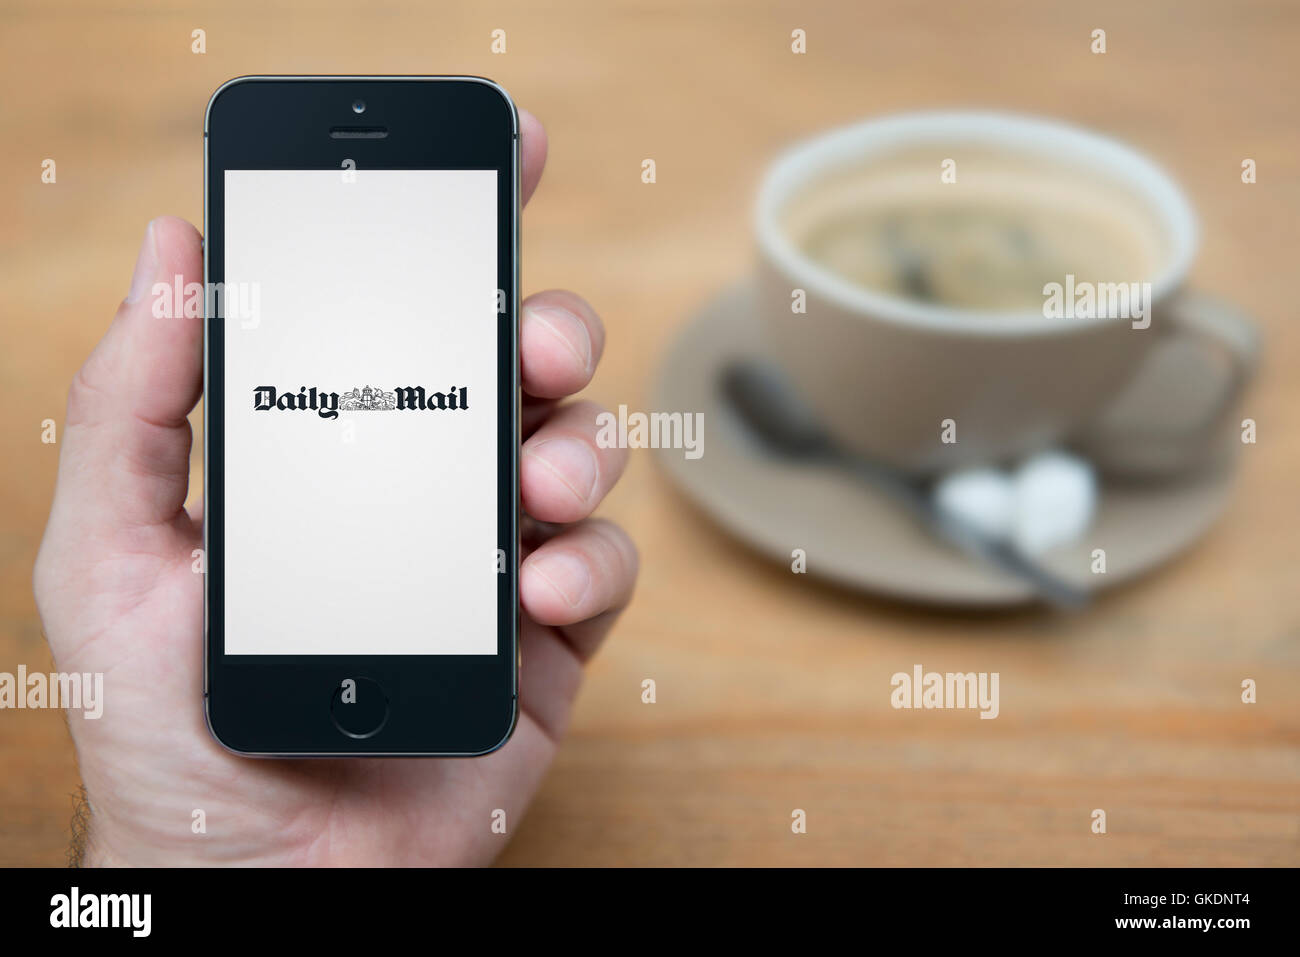 Un homme se penche sur son iPhone qui affiche le logo du Daily Mail, alors qu'assis avec une tasse de café (usage éditorial uniquement). Banque D'Images